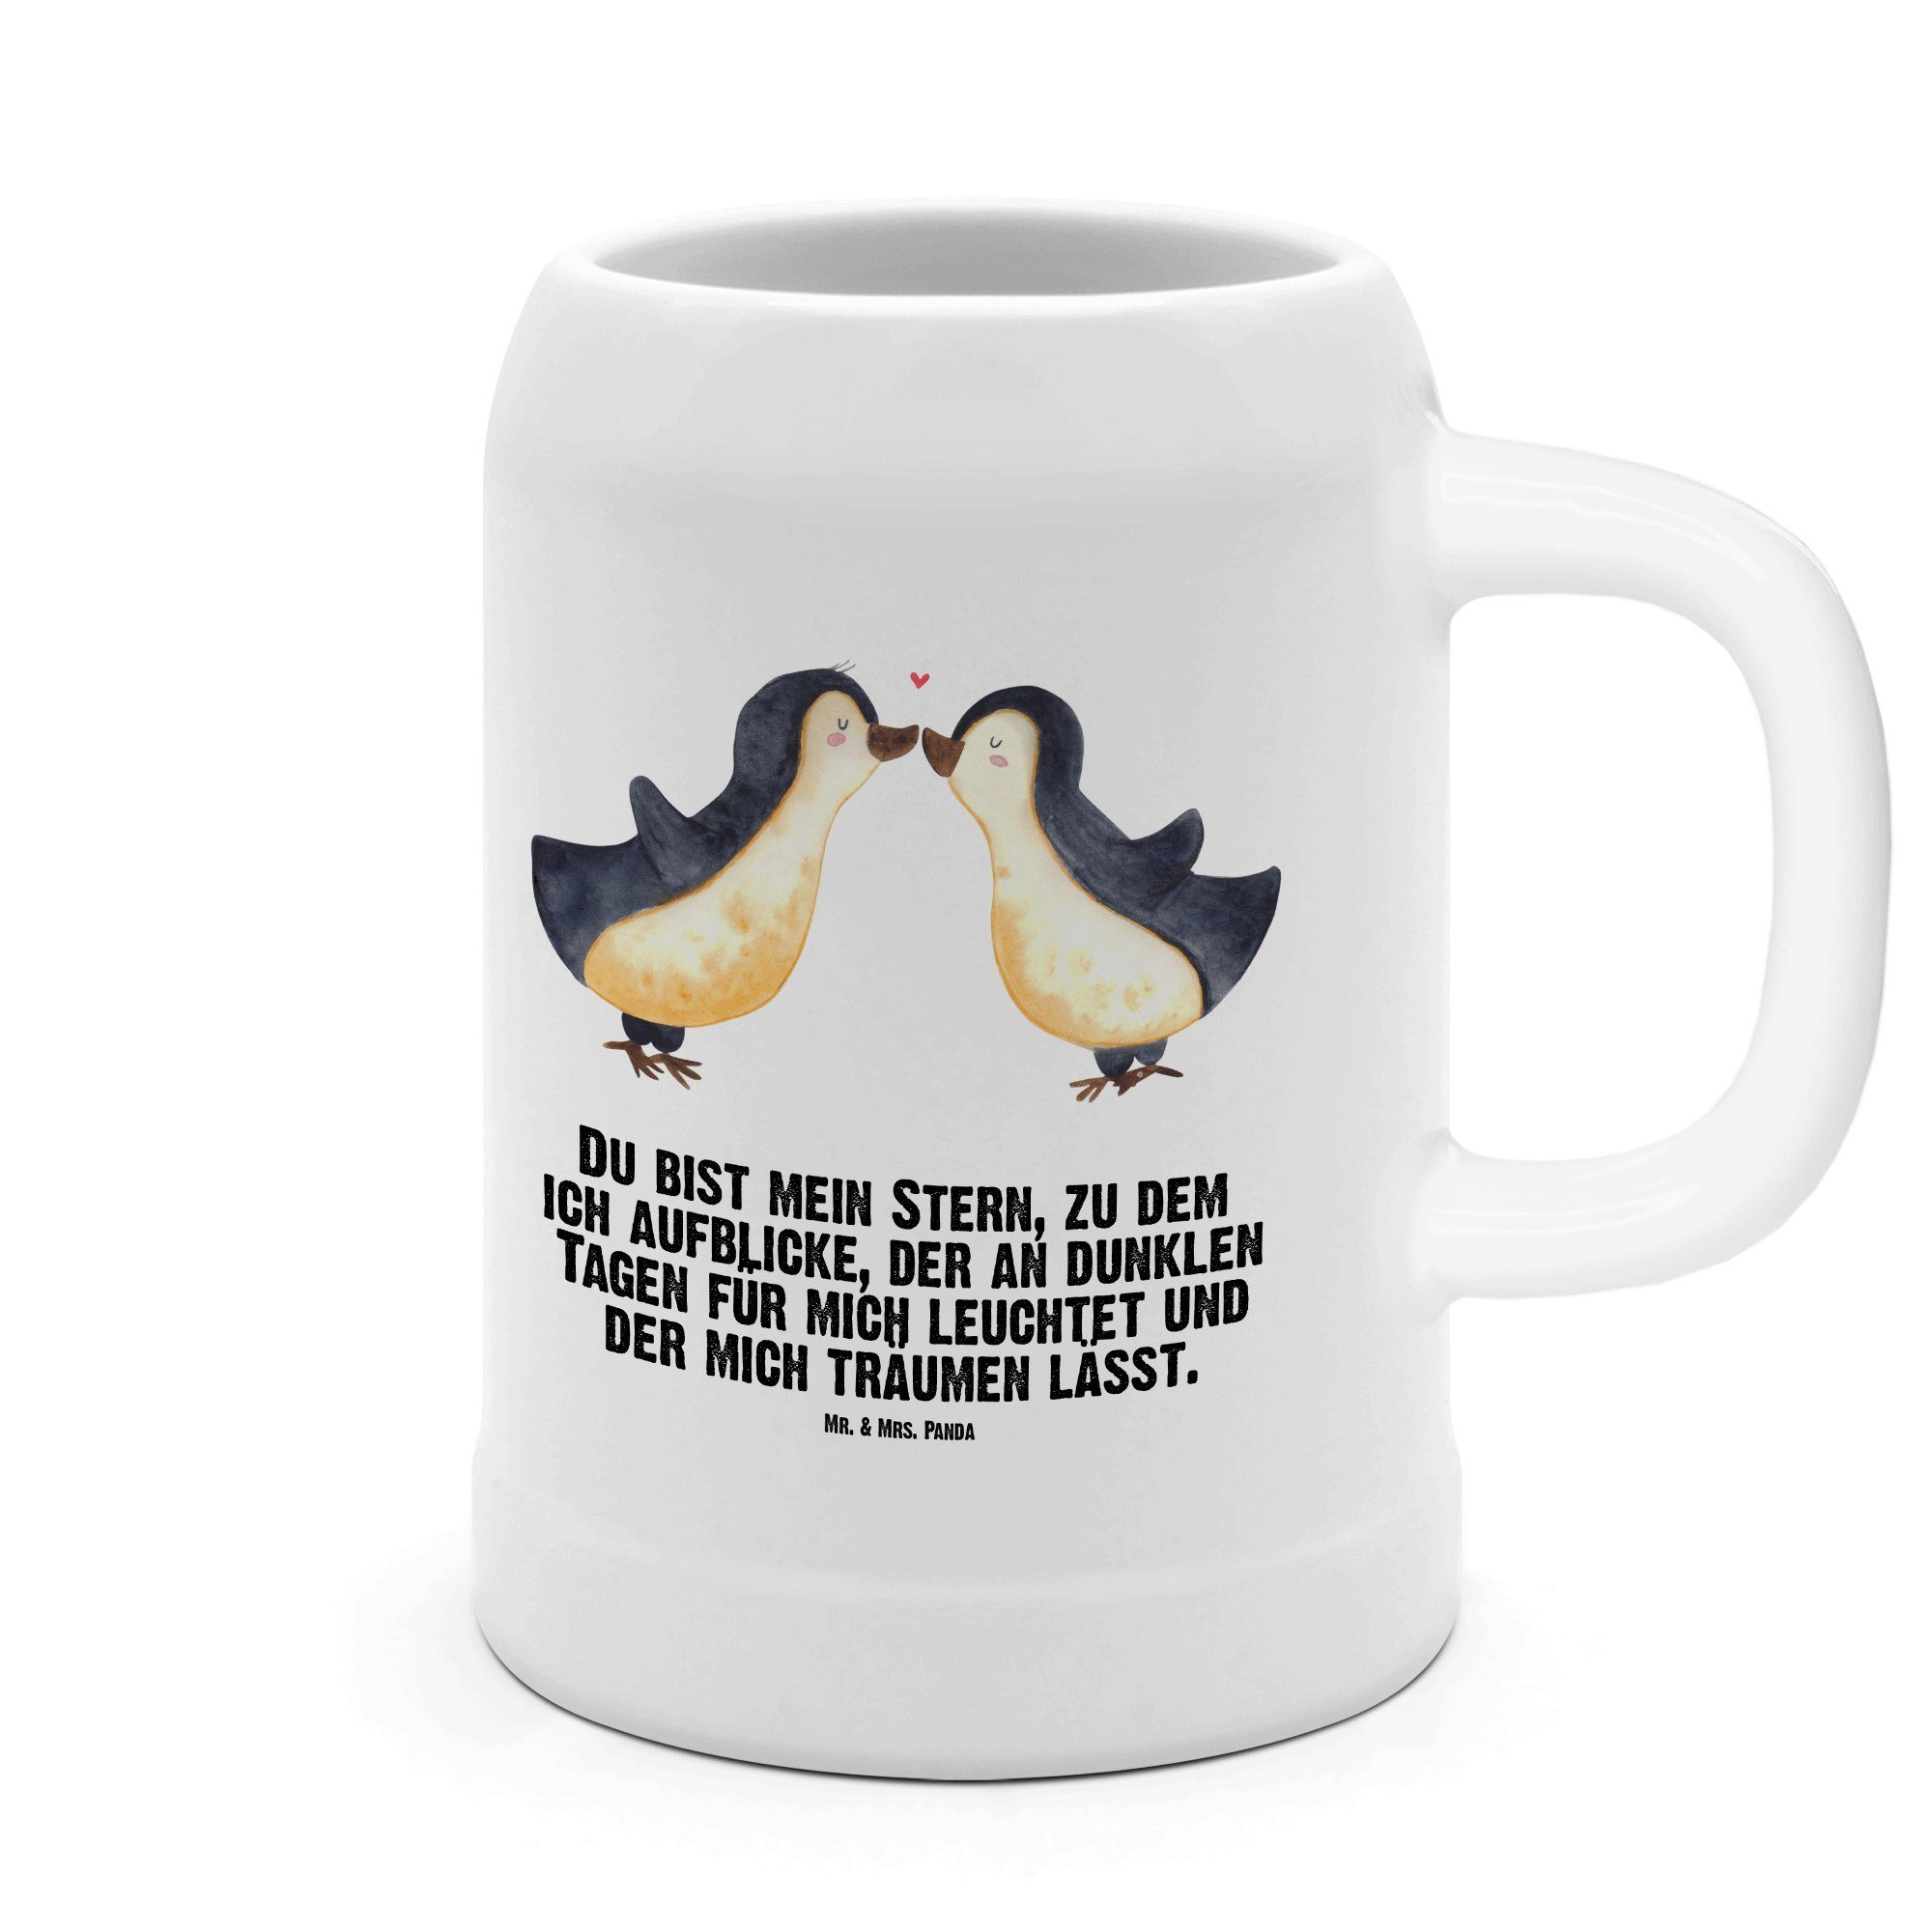 Mr. & Mrs. Panda Bierkrug Pinguin Liebe - Weiß - Geschenk, Gastgeschenk, 5 l, glücklich, große, Steinzeug, Kreative Sprüche